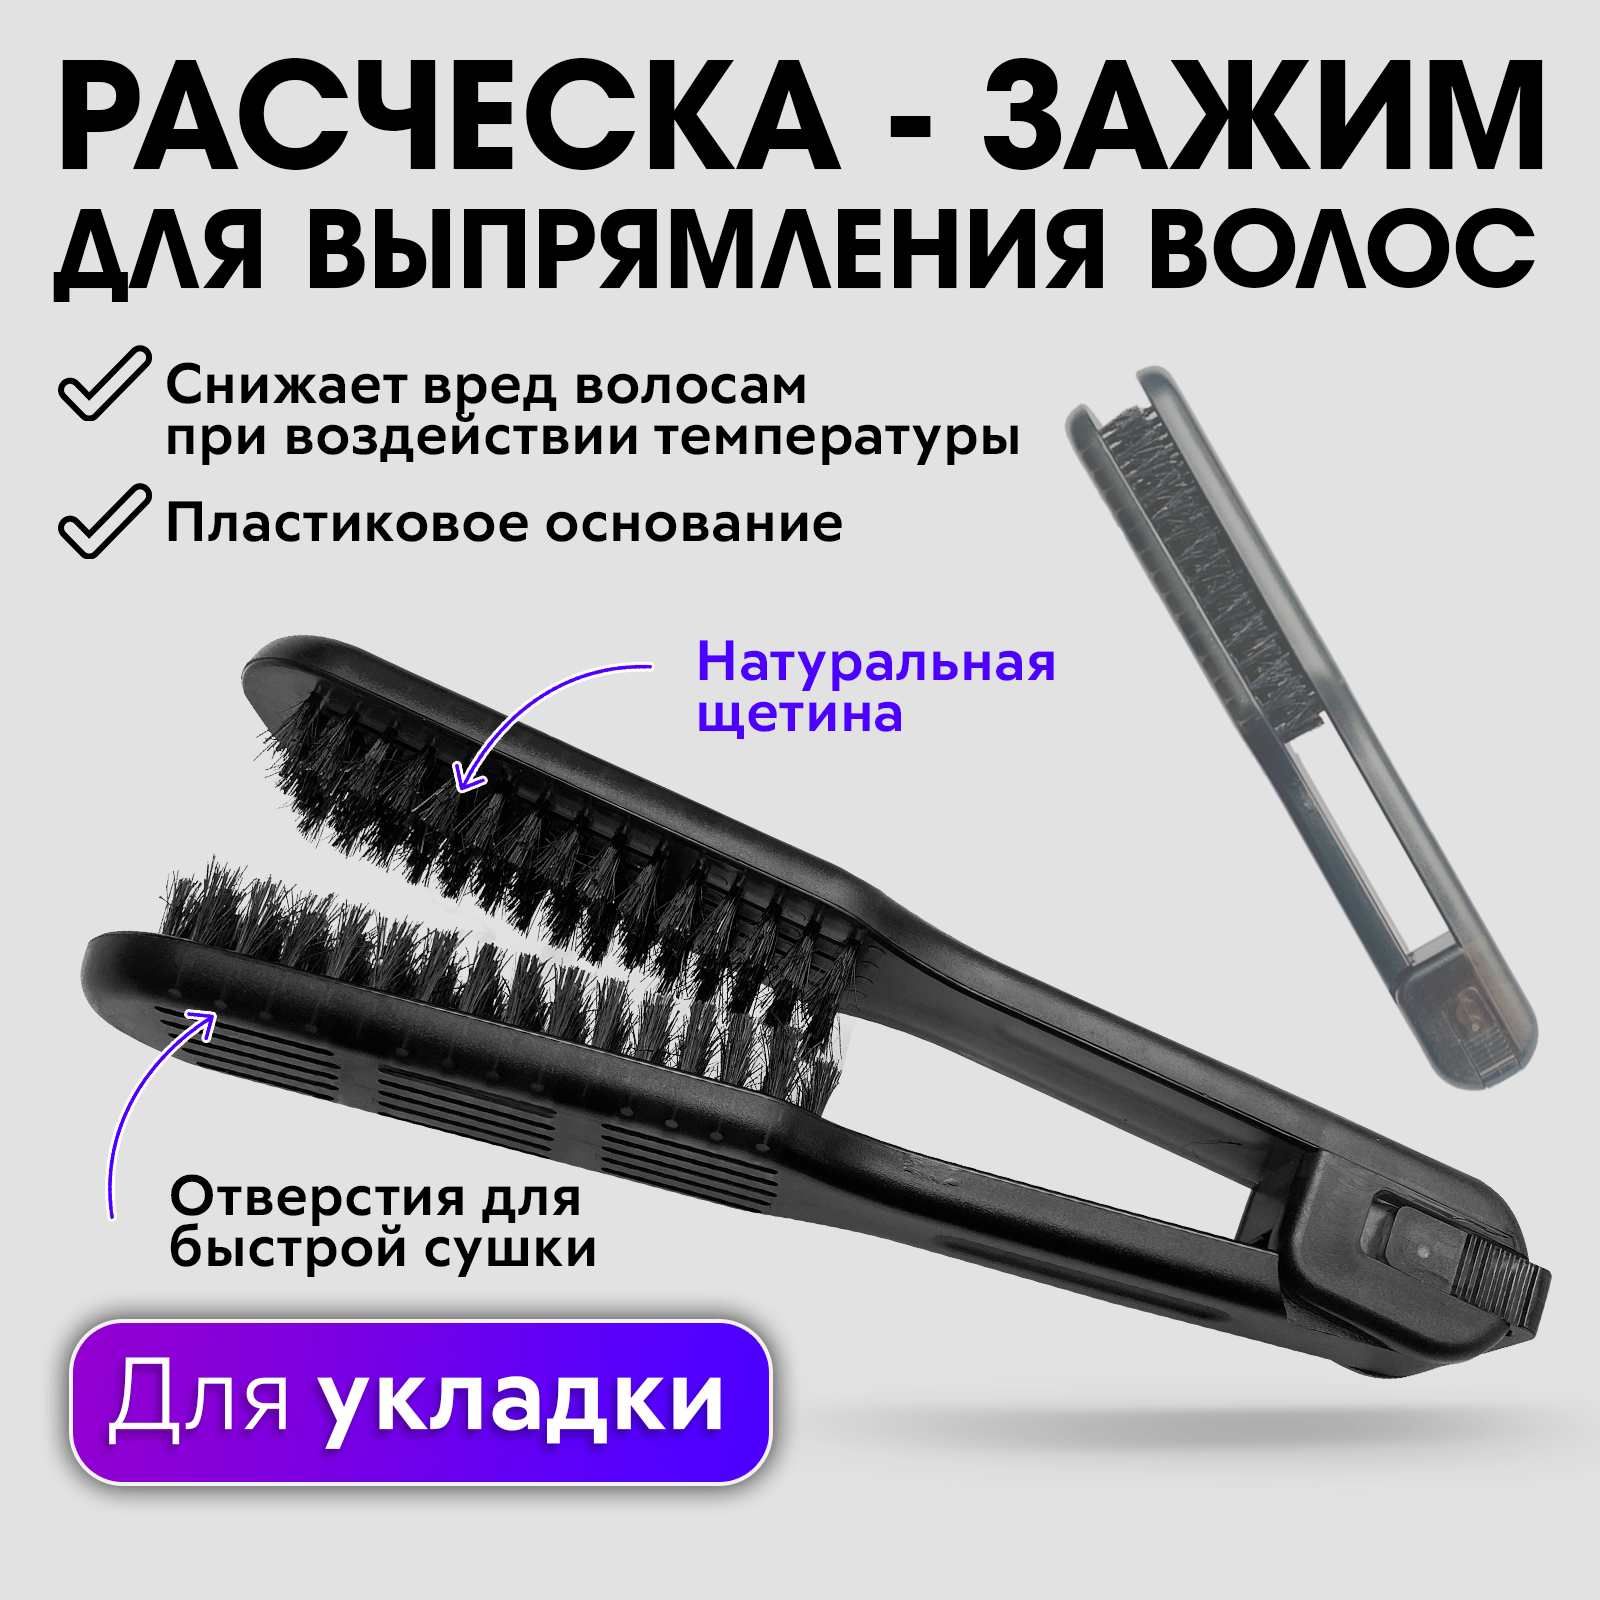 Расческа charites щетка для выпрямления волос с натуральной щетиной расческа charites зажим для выпрямления волос с натуральной щетиной